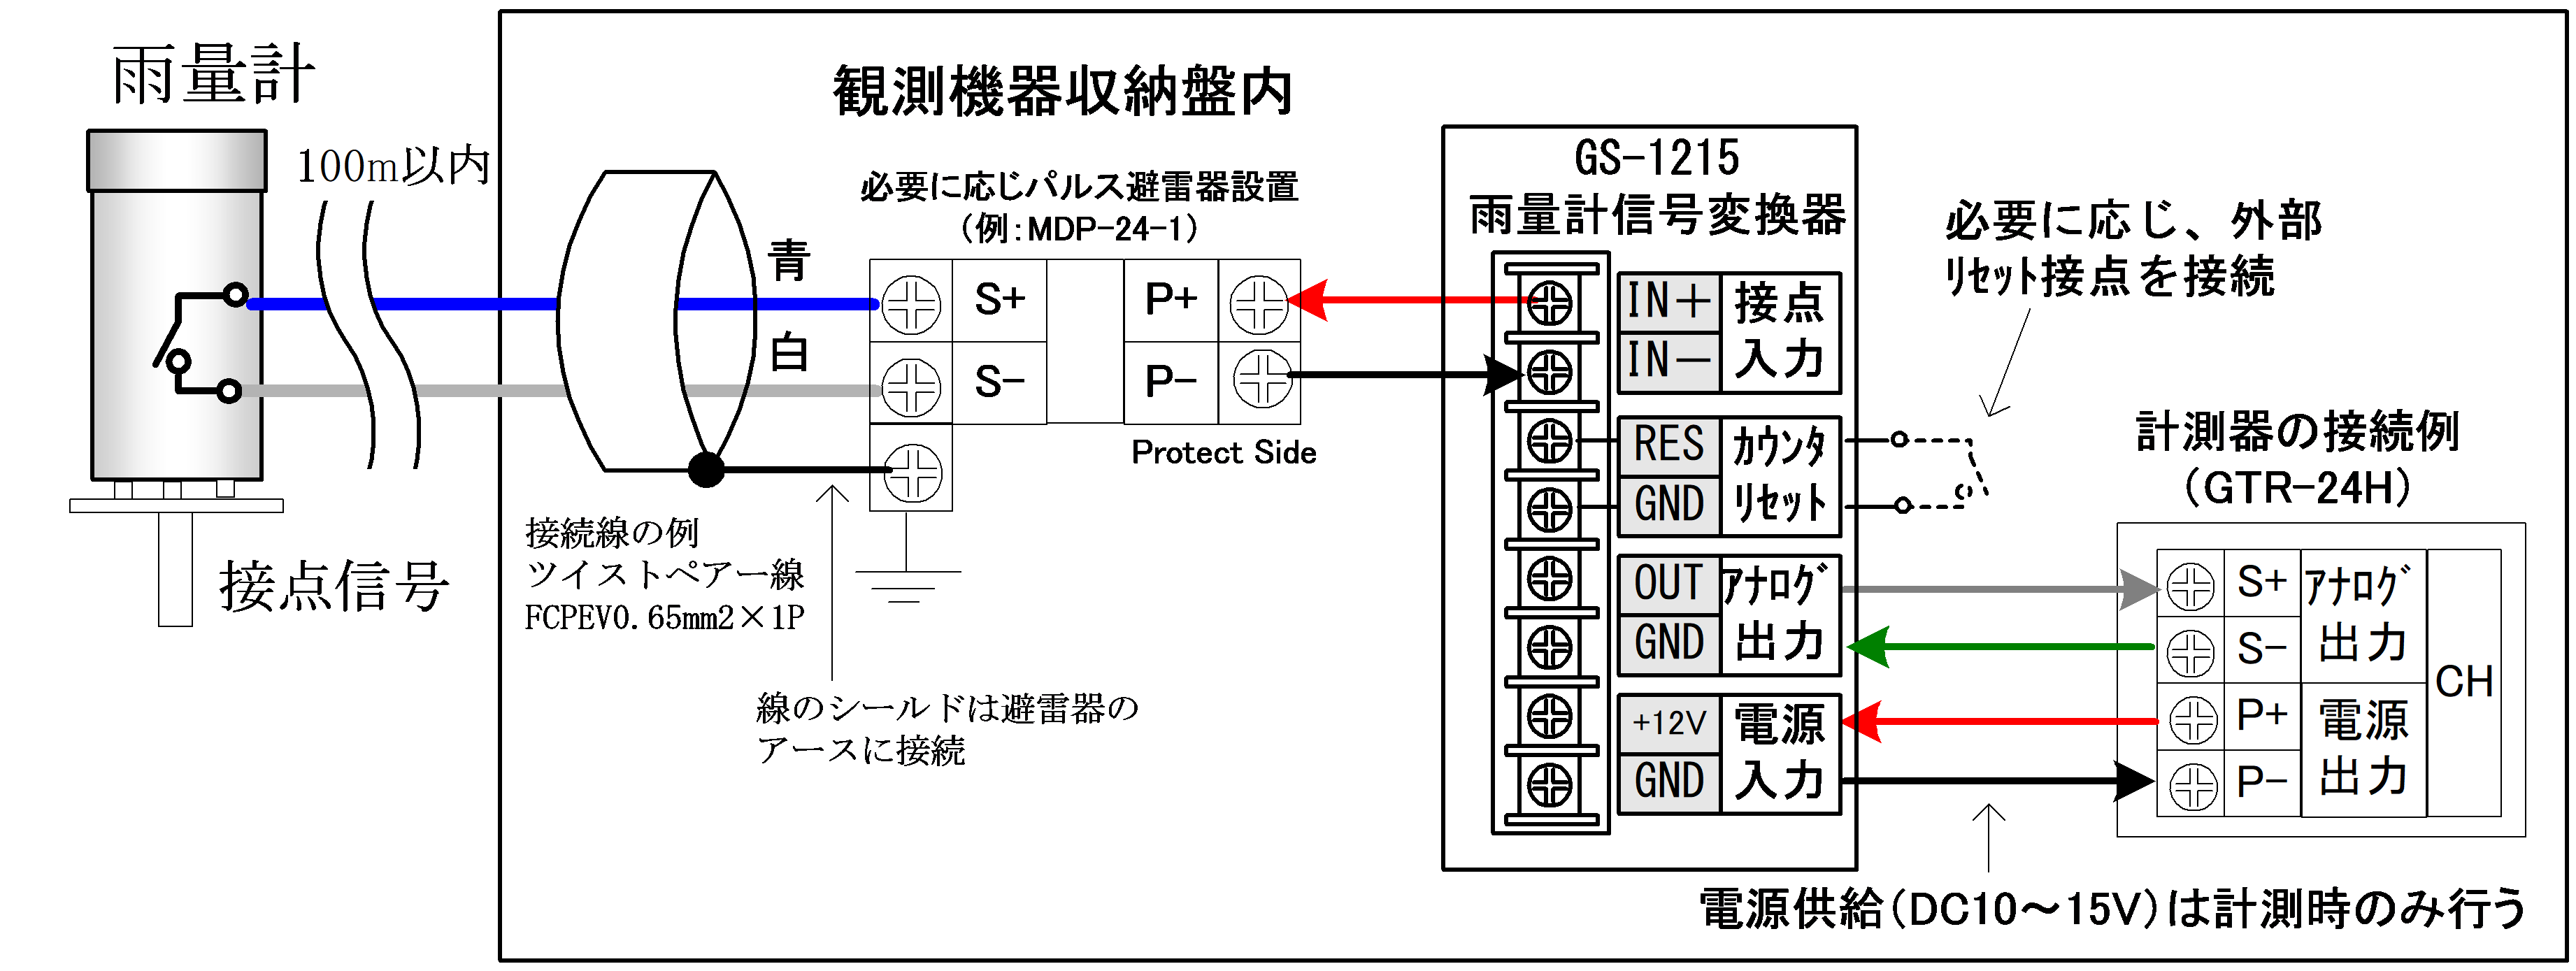 雨量信号変換器GS-1212の自動観測用データロガーへの接続図